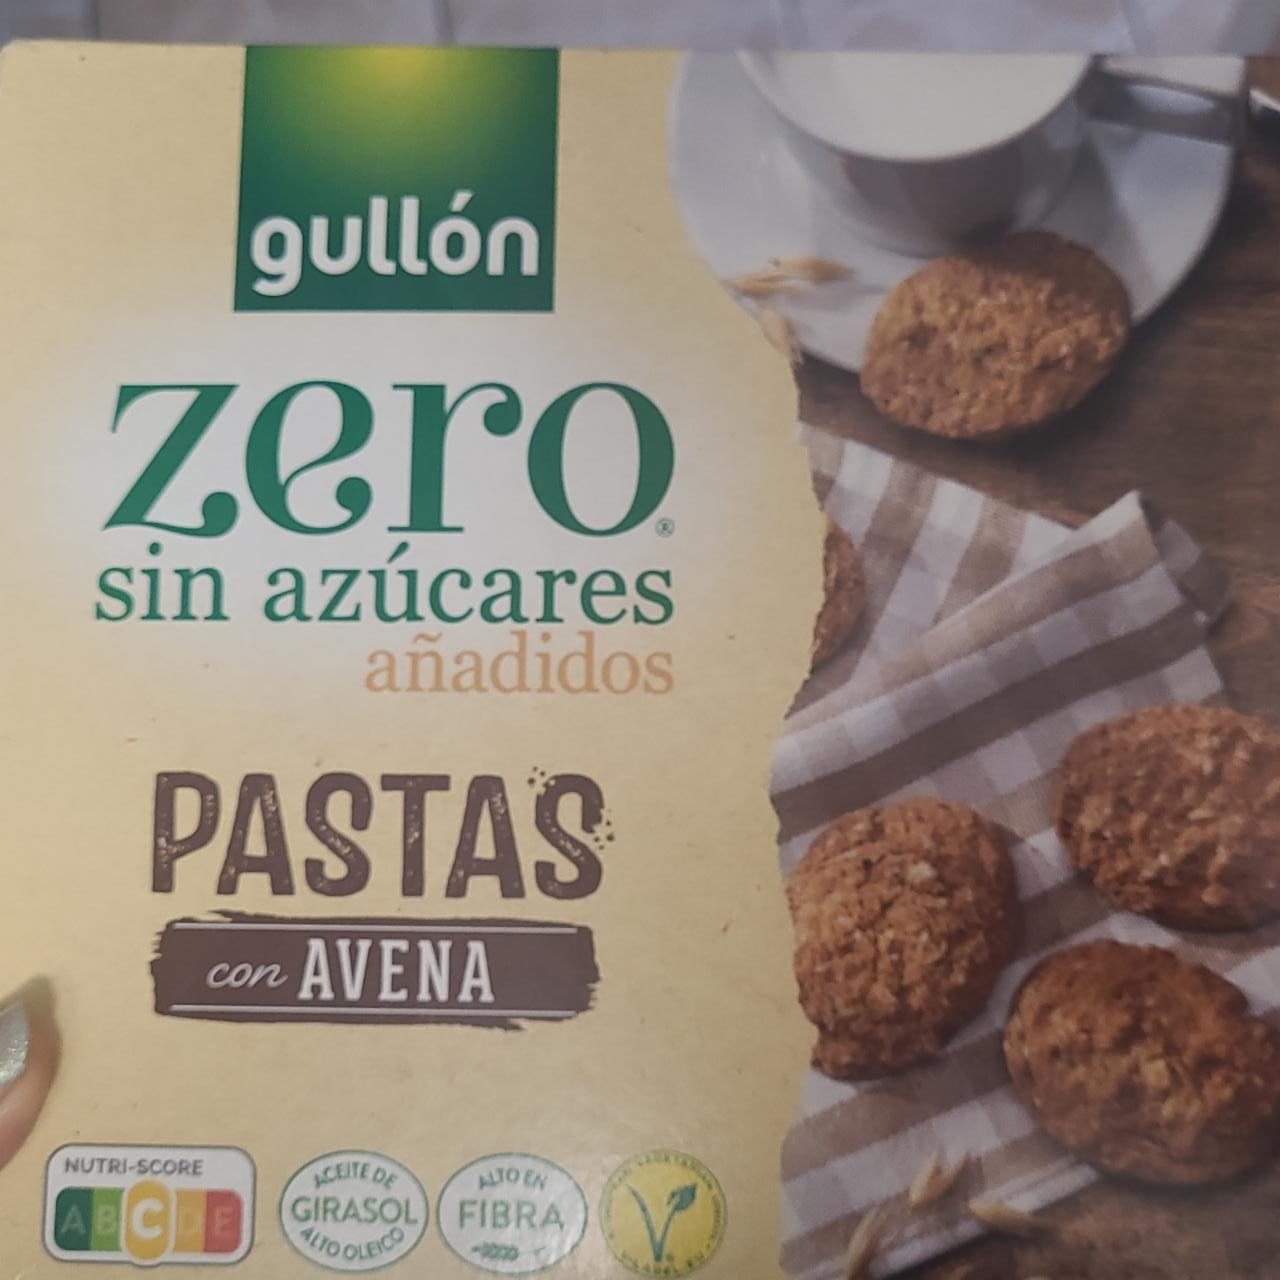 Képek - Zero sin azúcares anadidos Pastas con Avena Gullón